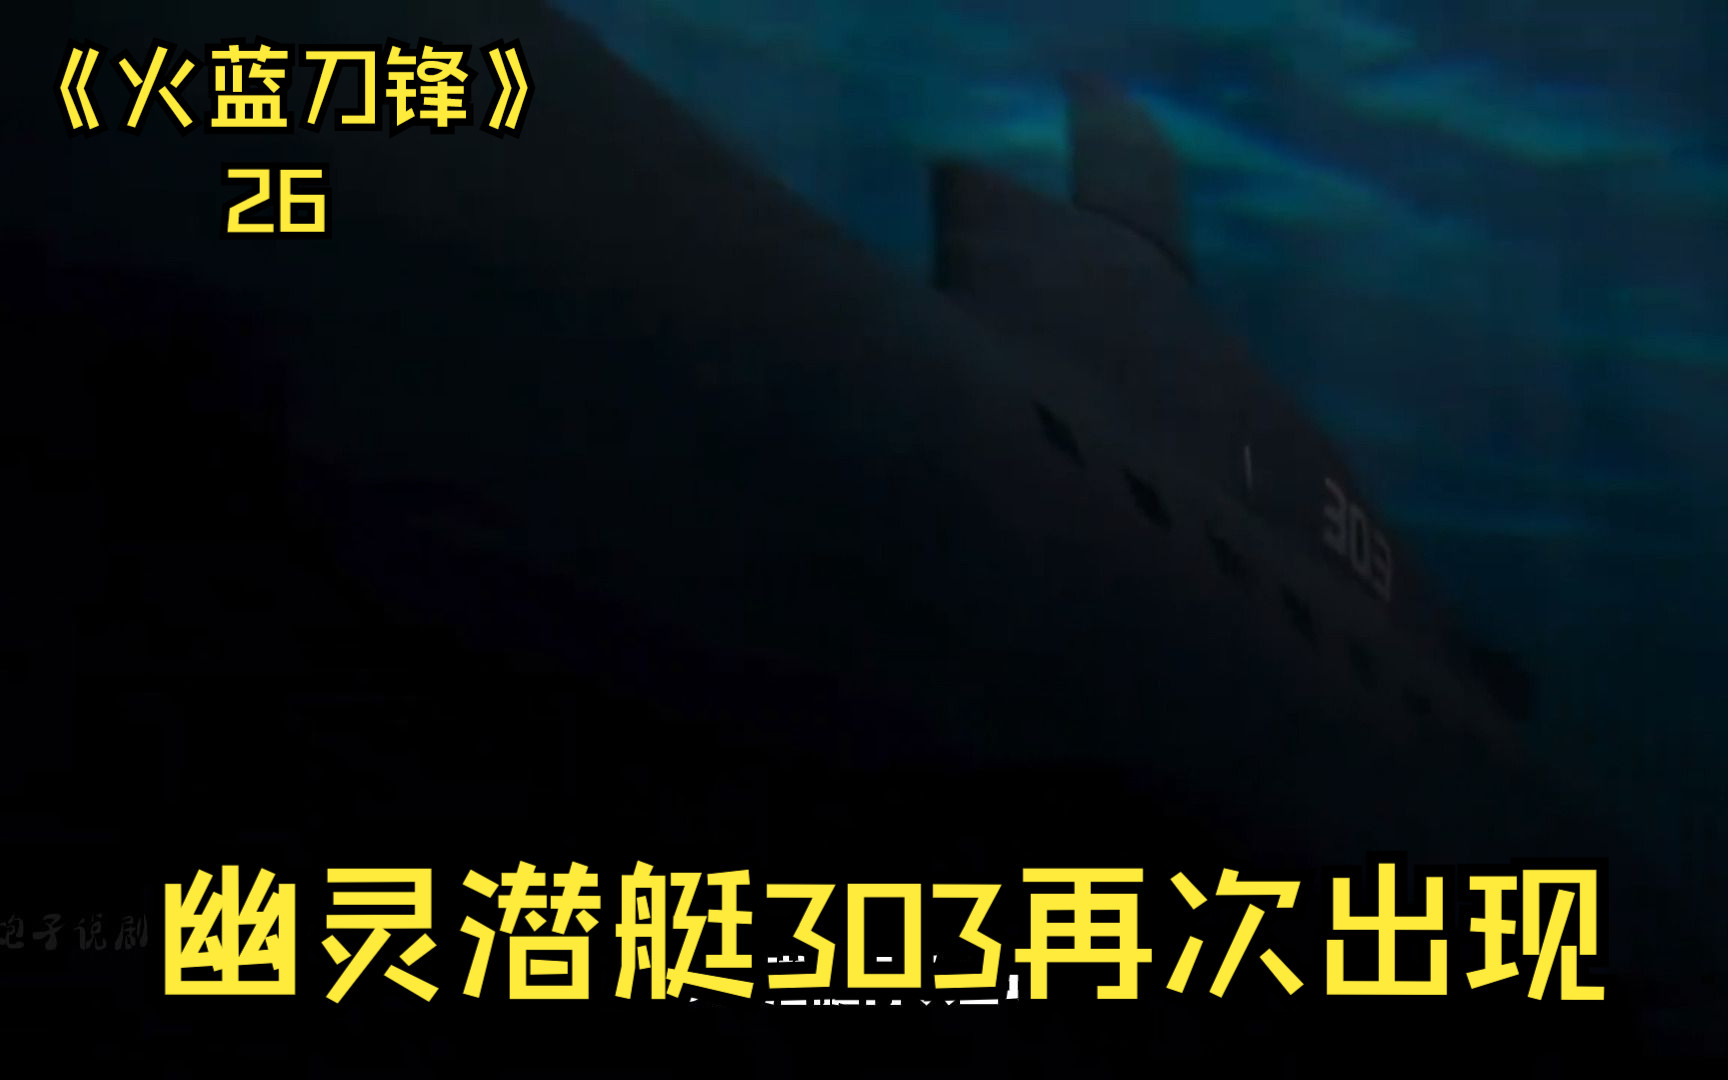 被称为幽灵潜艇的303再次出现!